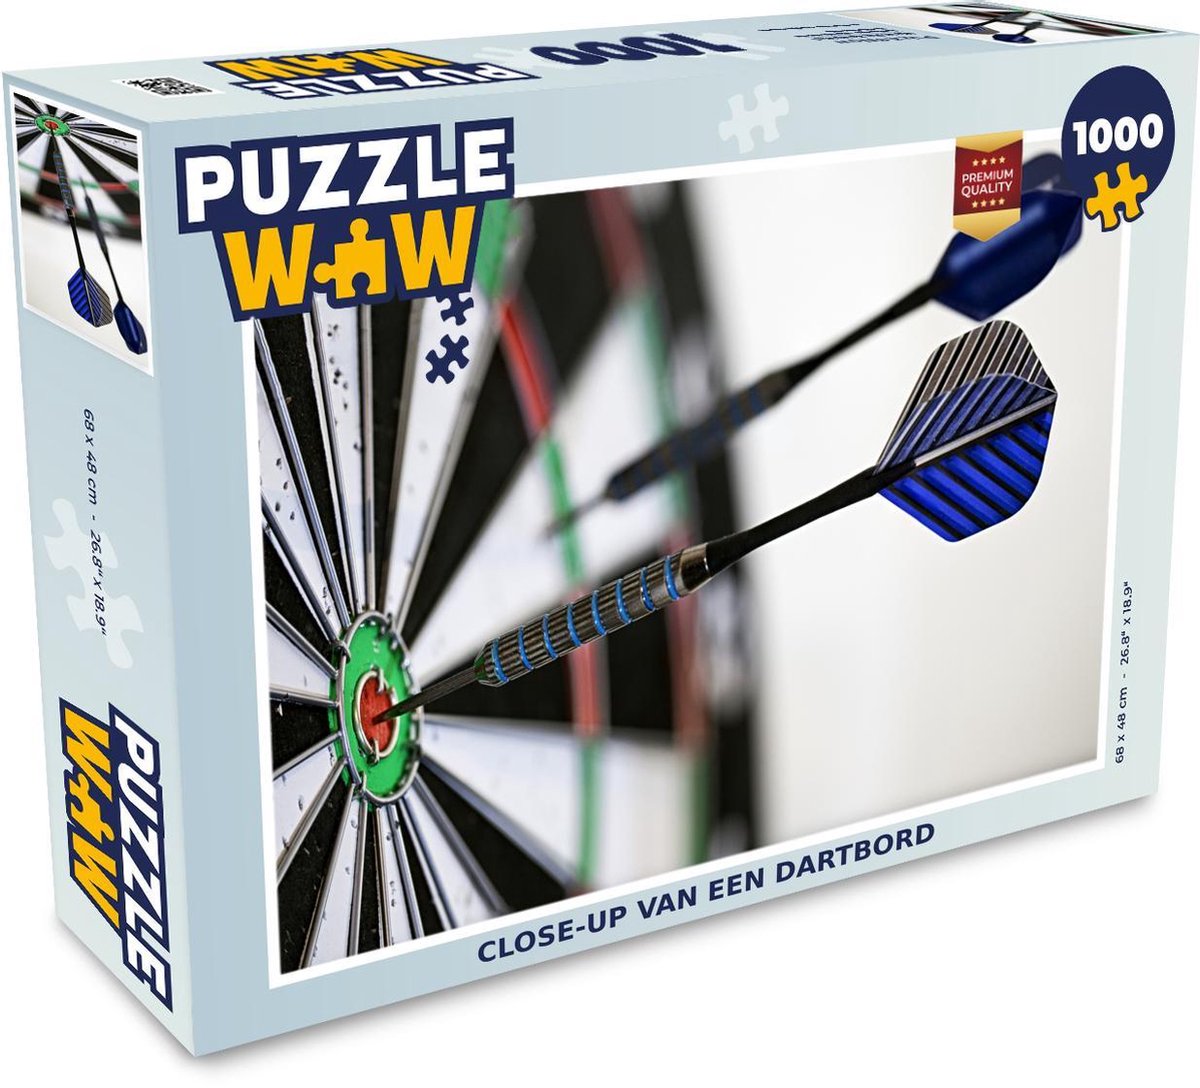 Puzzel 1000 stukjes volwassenen Darten 1000 stukjes - Close-up van een dartbord - PuzzleWow heeft +100000 puzzels